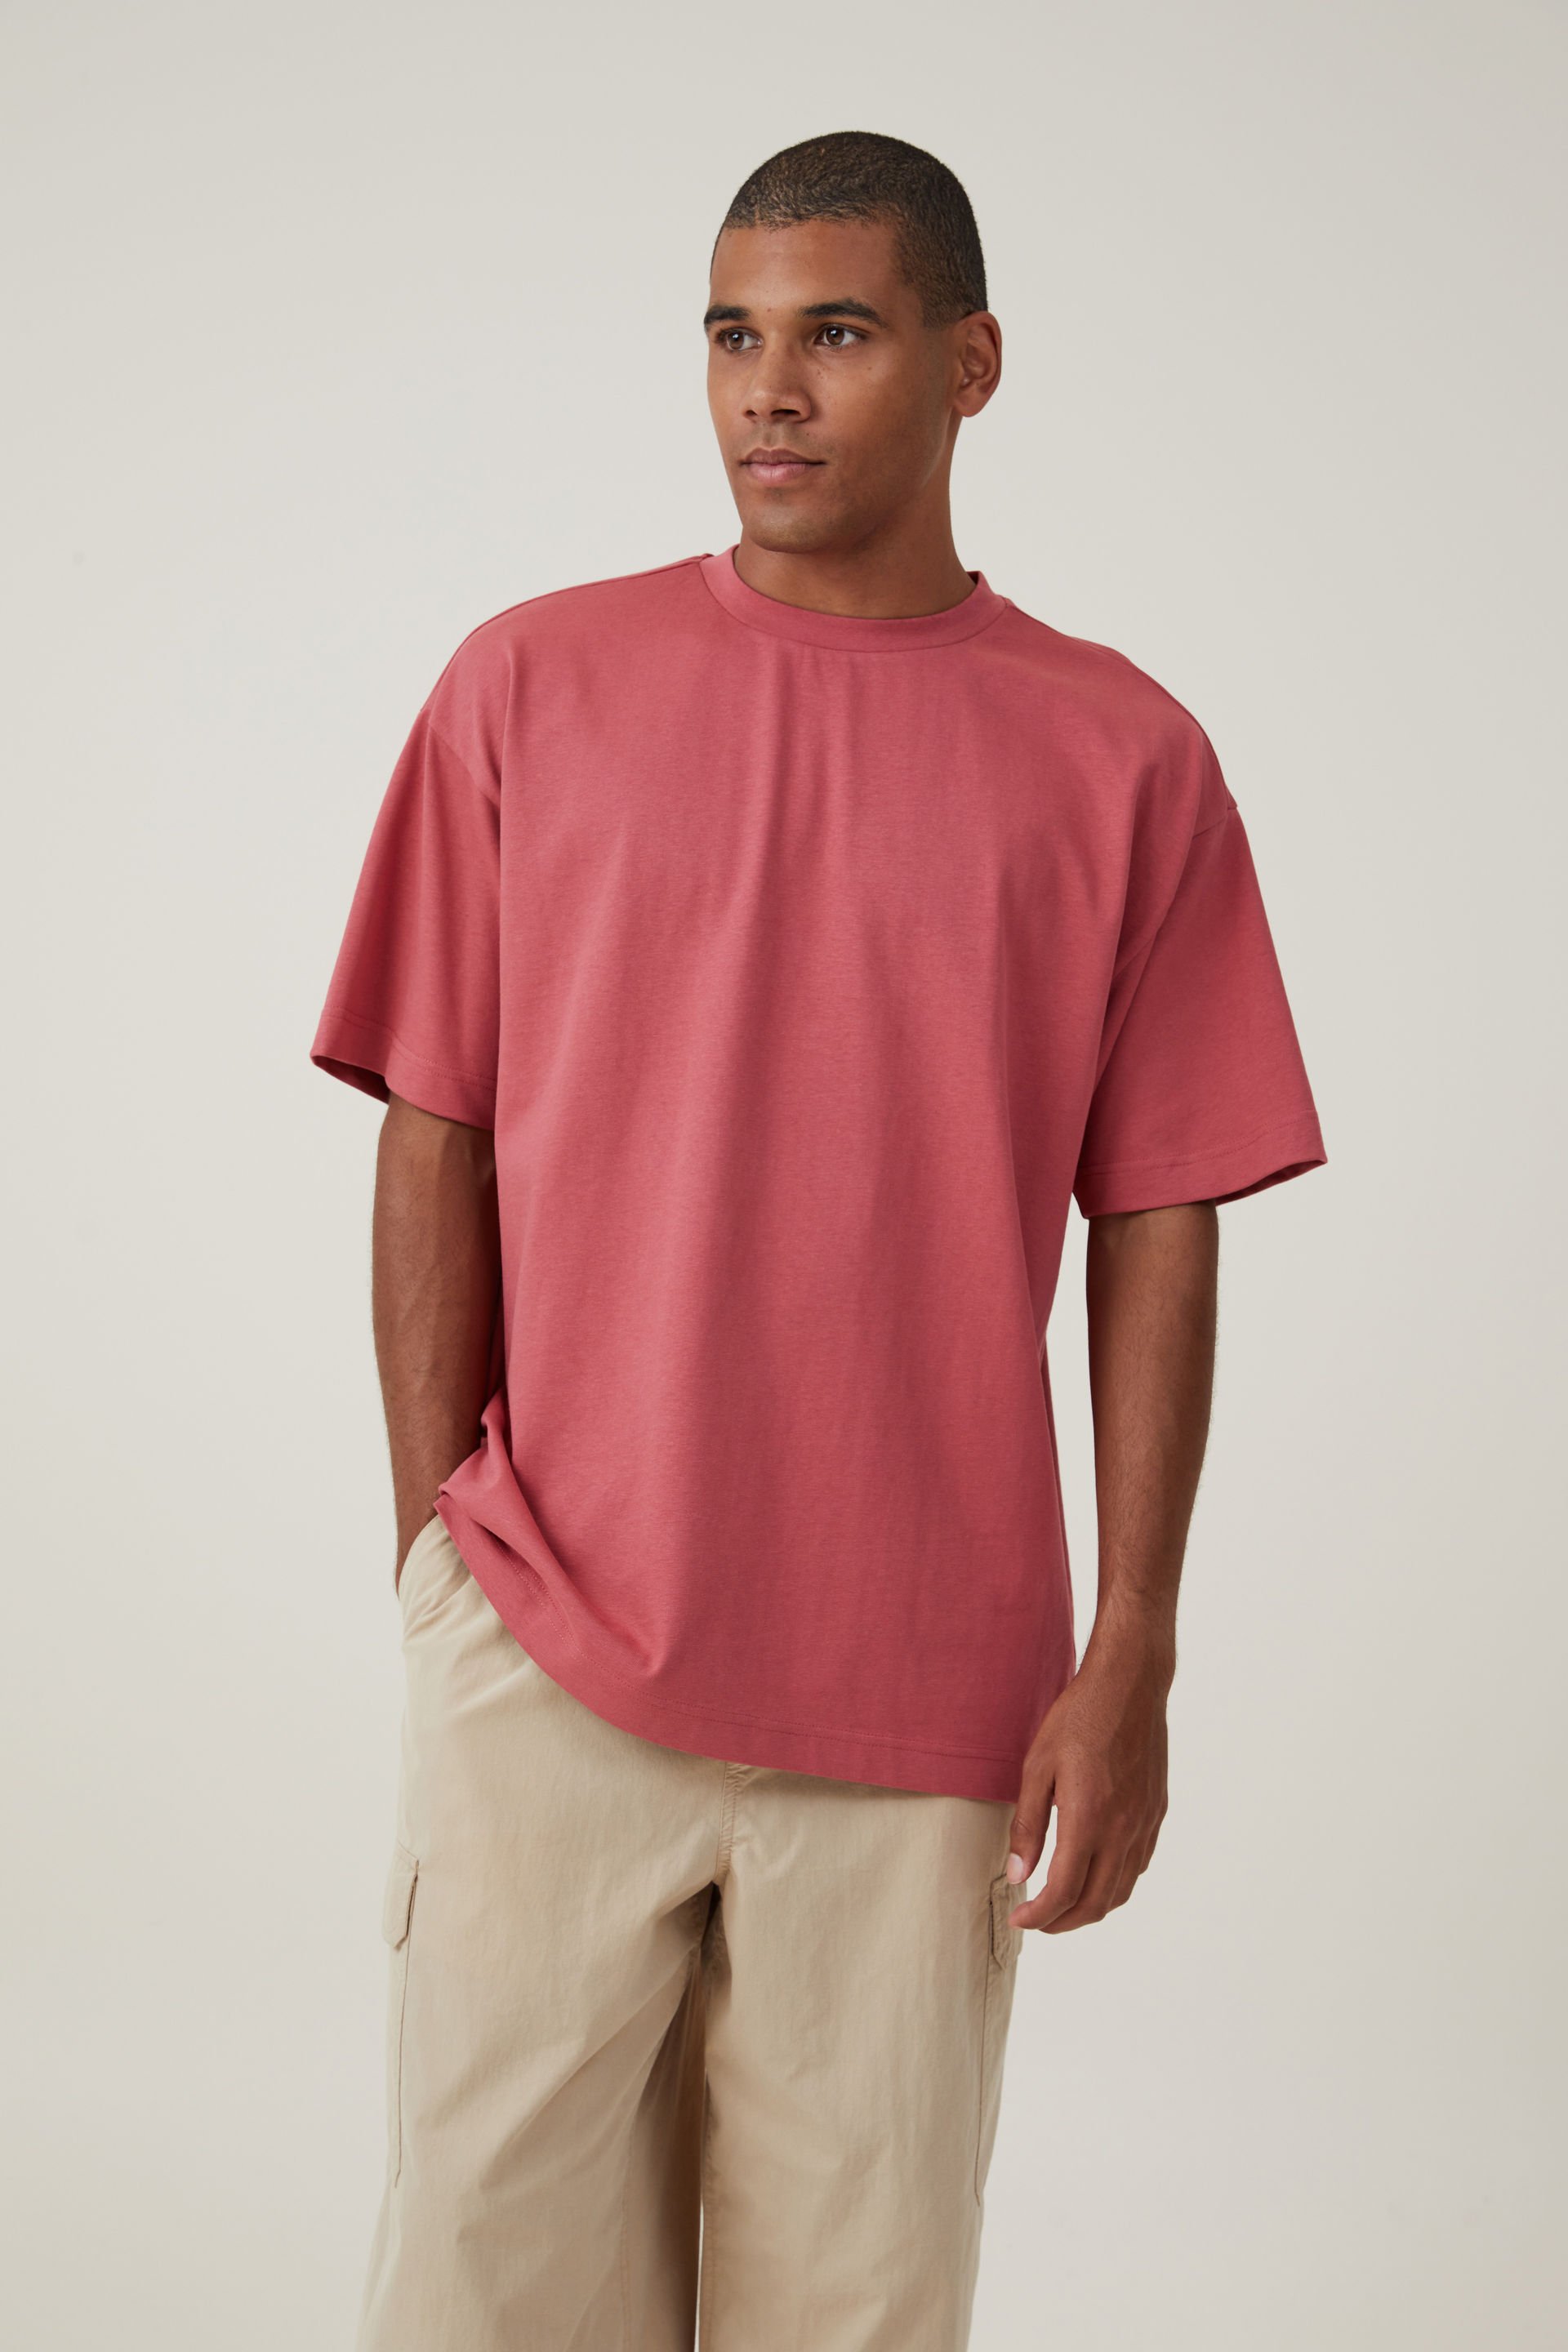 Cotton On Men - Box Fit Plain T-Shirt - Soft red